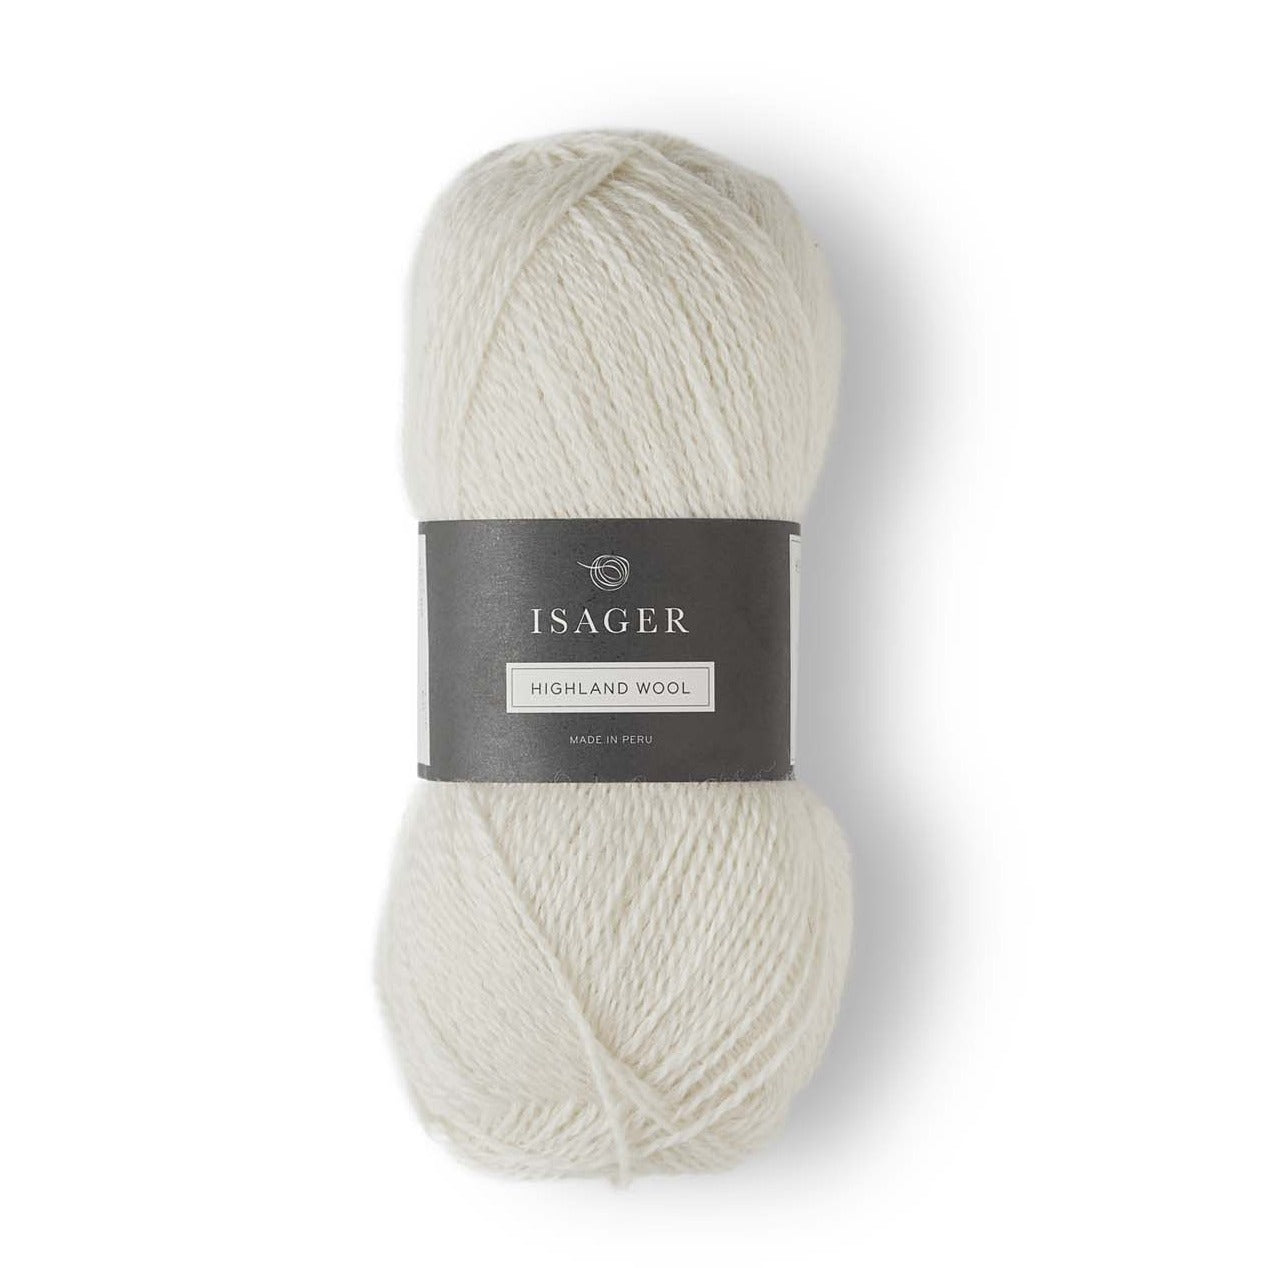 Isager Highland Wool - et smukt og slidstærkt uldgarn fra Isager, der bare holder og holder.